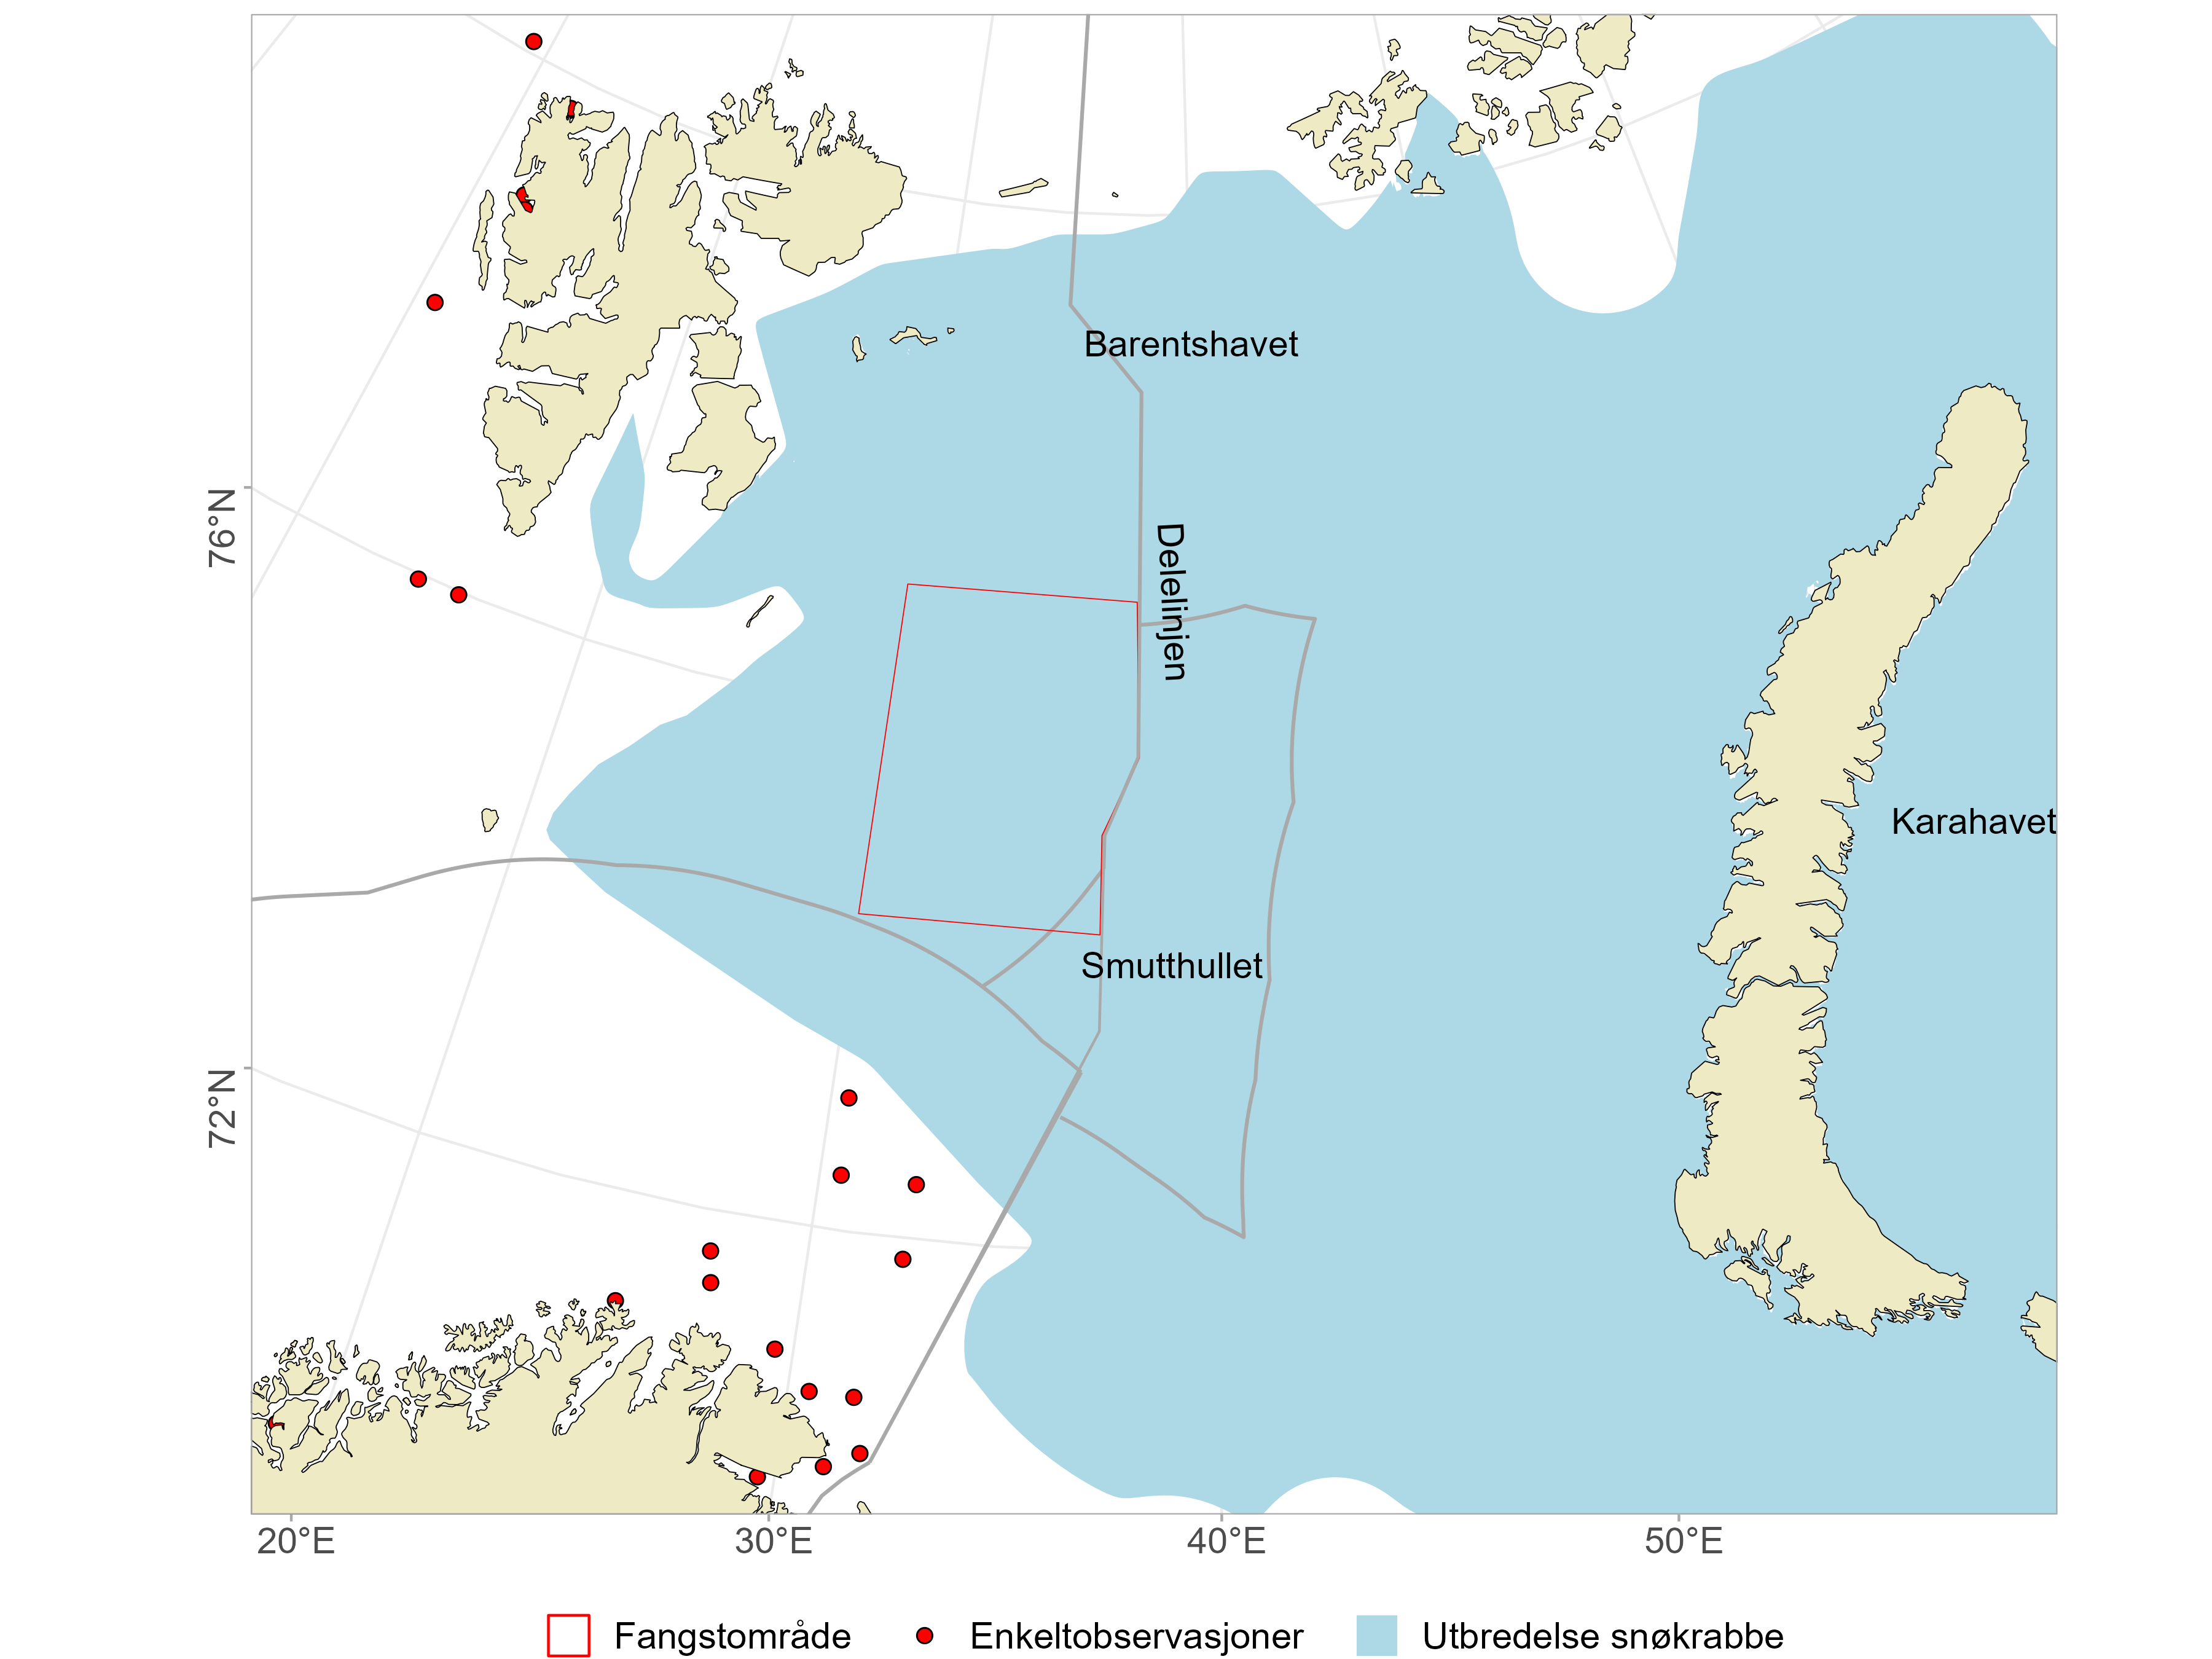 Området for sammenhengende utbredelse av snøkrabbe i Barentshavet og Karahavet, og enkeltobservasjoner gjort langs kysten av Troms og Finnmark og på vest- og nordkysten av Svalbard. Fangstområdet der det kommersielle fisket foregår er markert på kartet. 